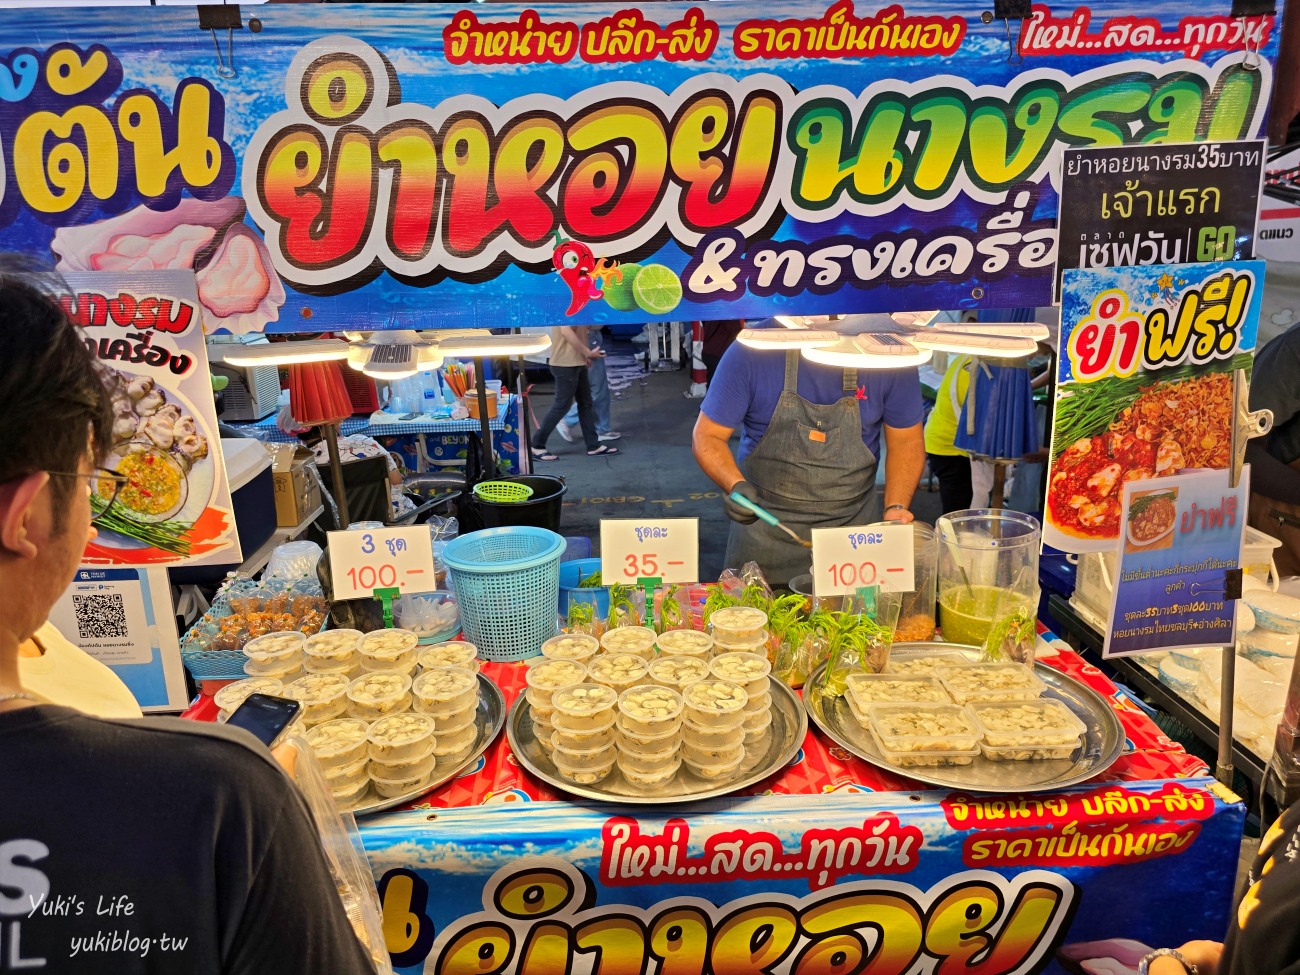 曼谷新夜市【Save One GO Market】東西便宜10泰銖超好買(交通.營業資訊) - yuki.tw